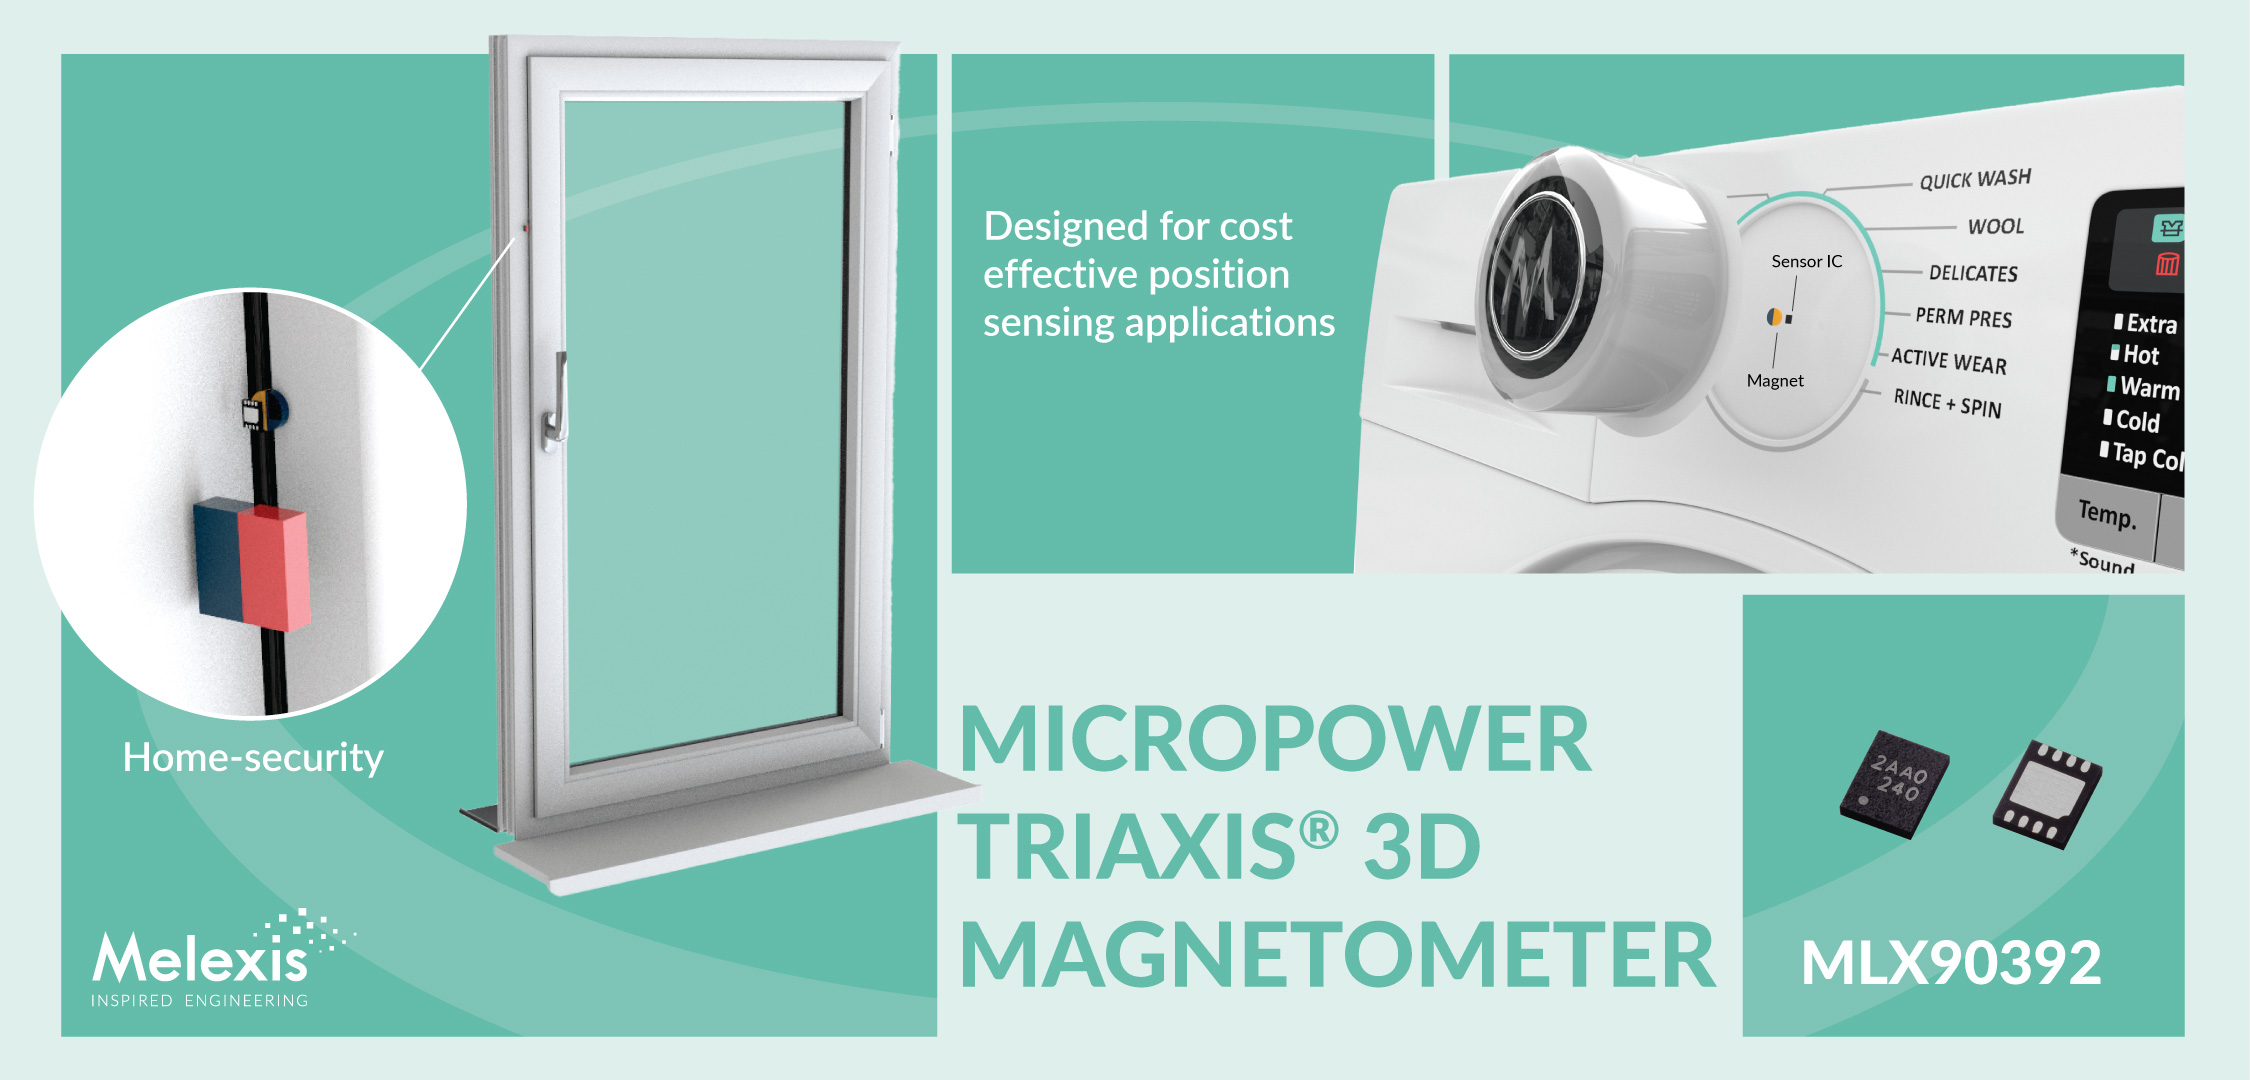 Melexis 推出面向消费类应用的紧凑♀型低压 3D 磁力计